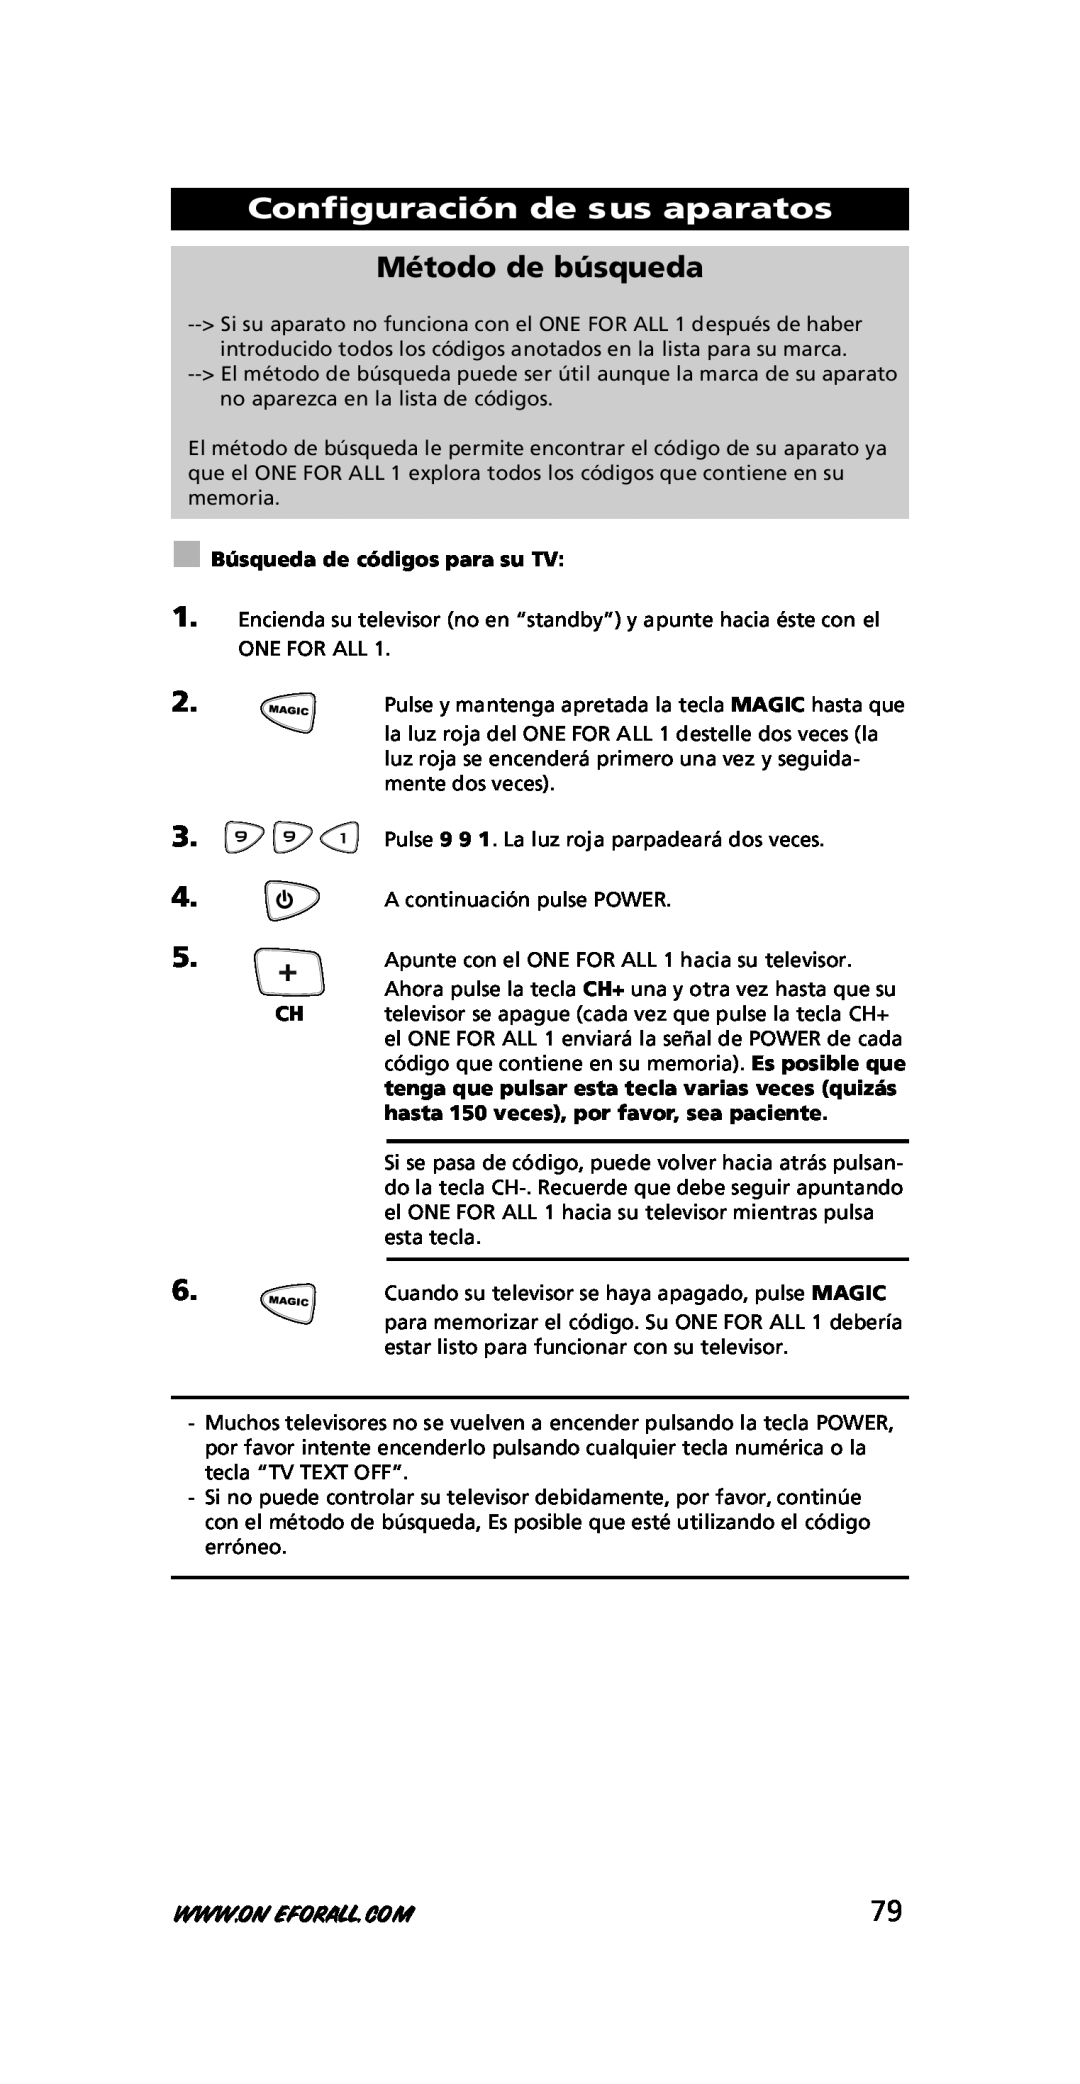 One for All URC-7711 instruction manual Método de búsqueda, Configuración de sus aparatos, Búsqueda de códigos para su TV 